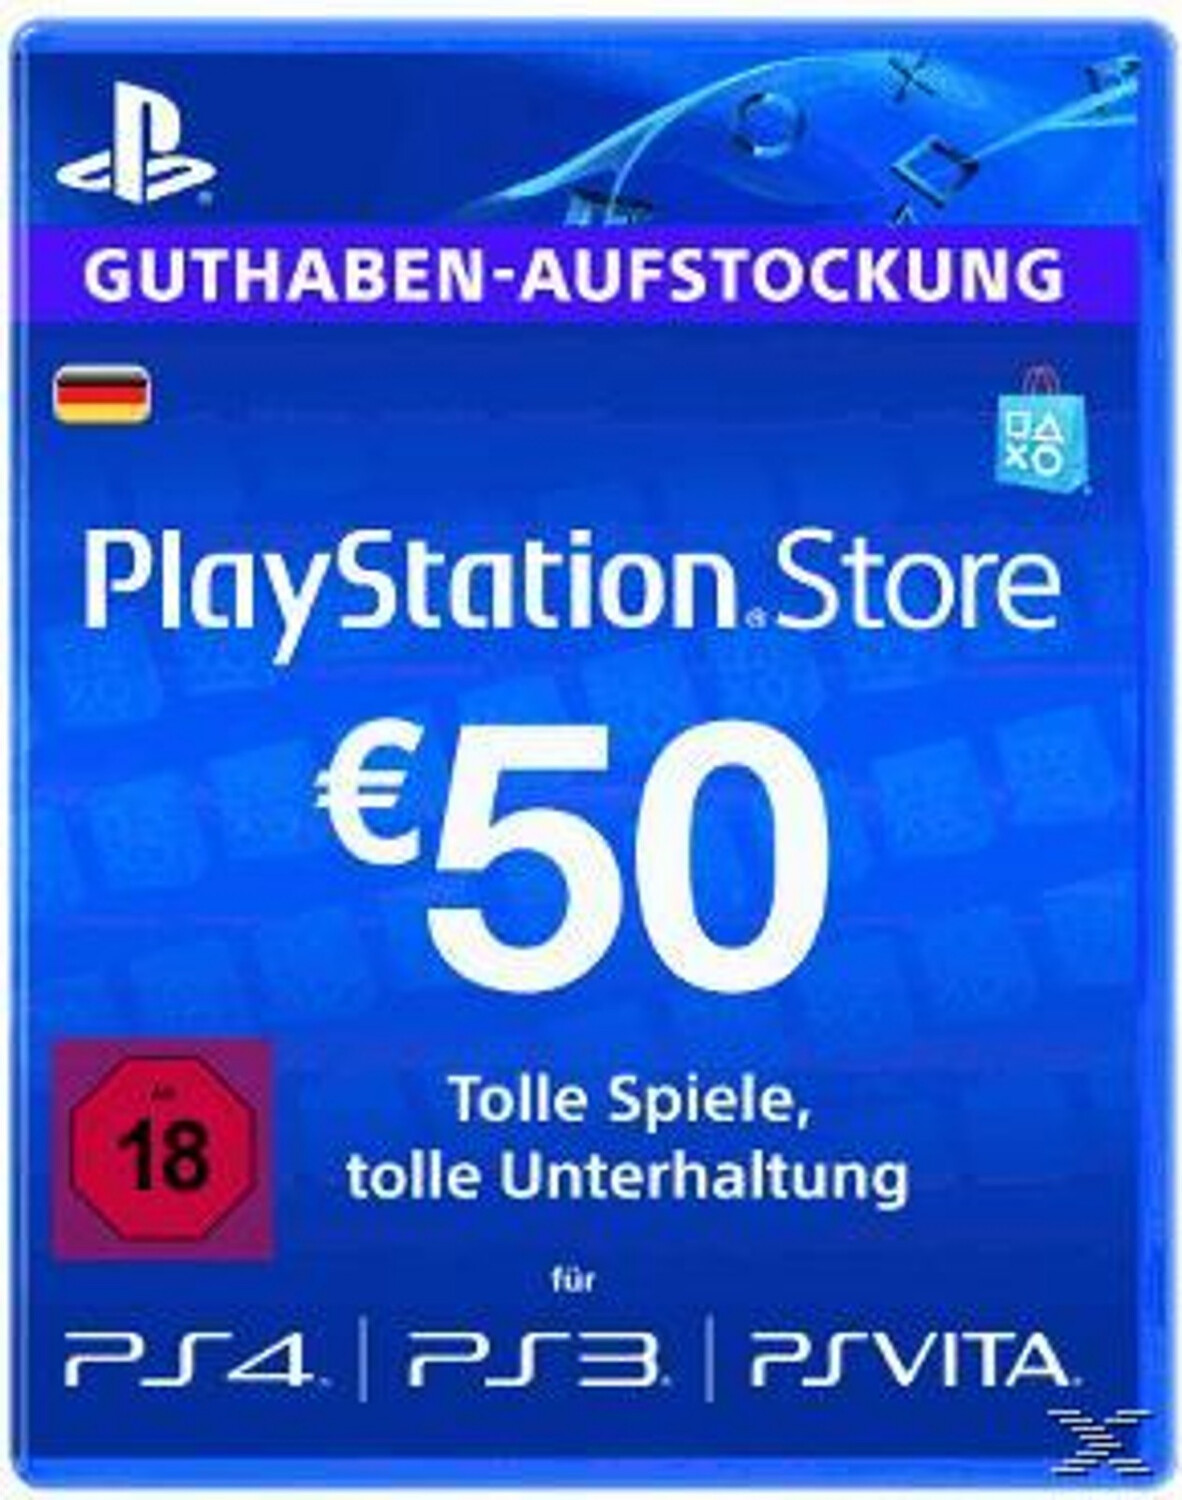 25€ Carte Cadeau PlayStation Store pour PlayStation Plus Essential, 3 Mois